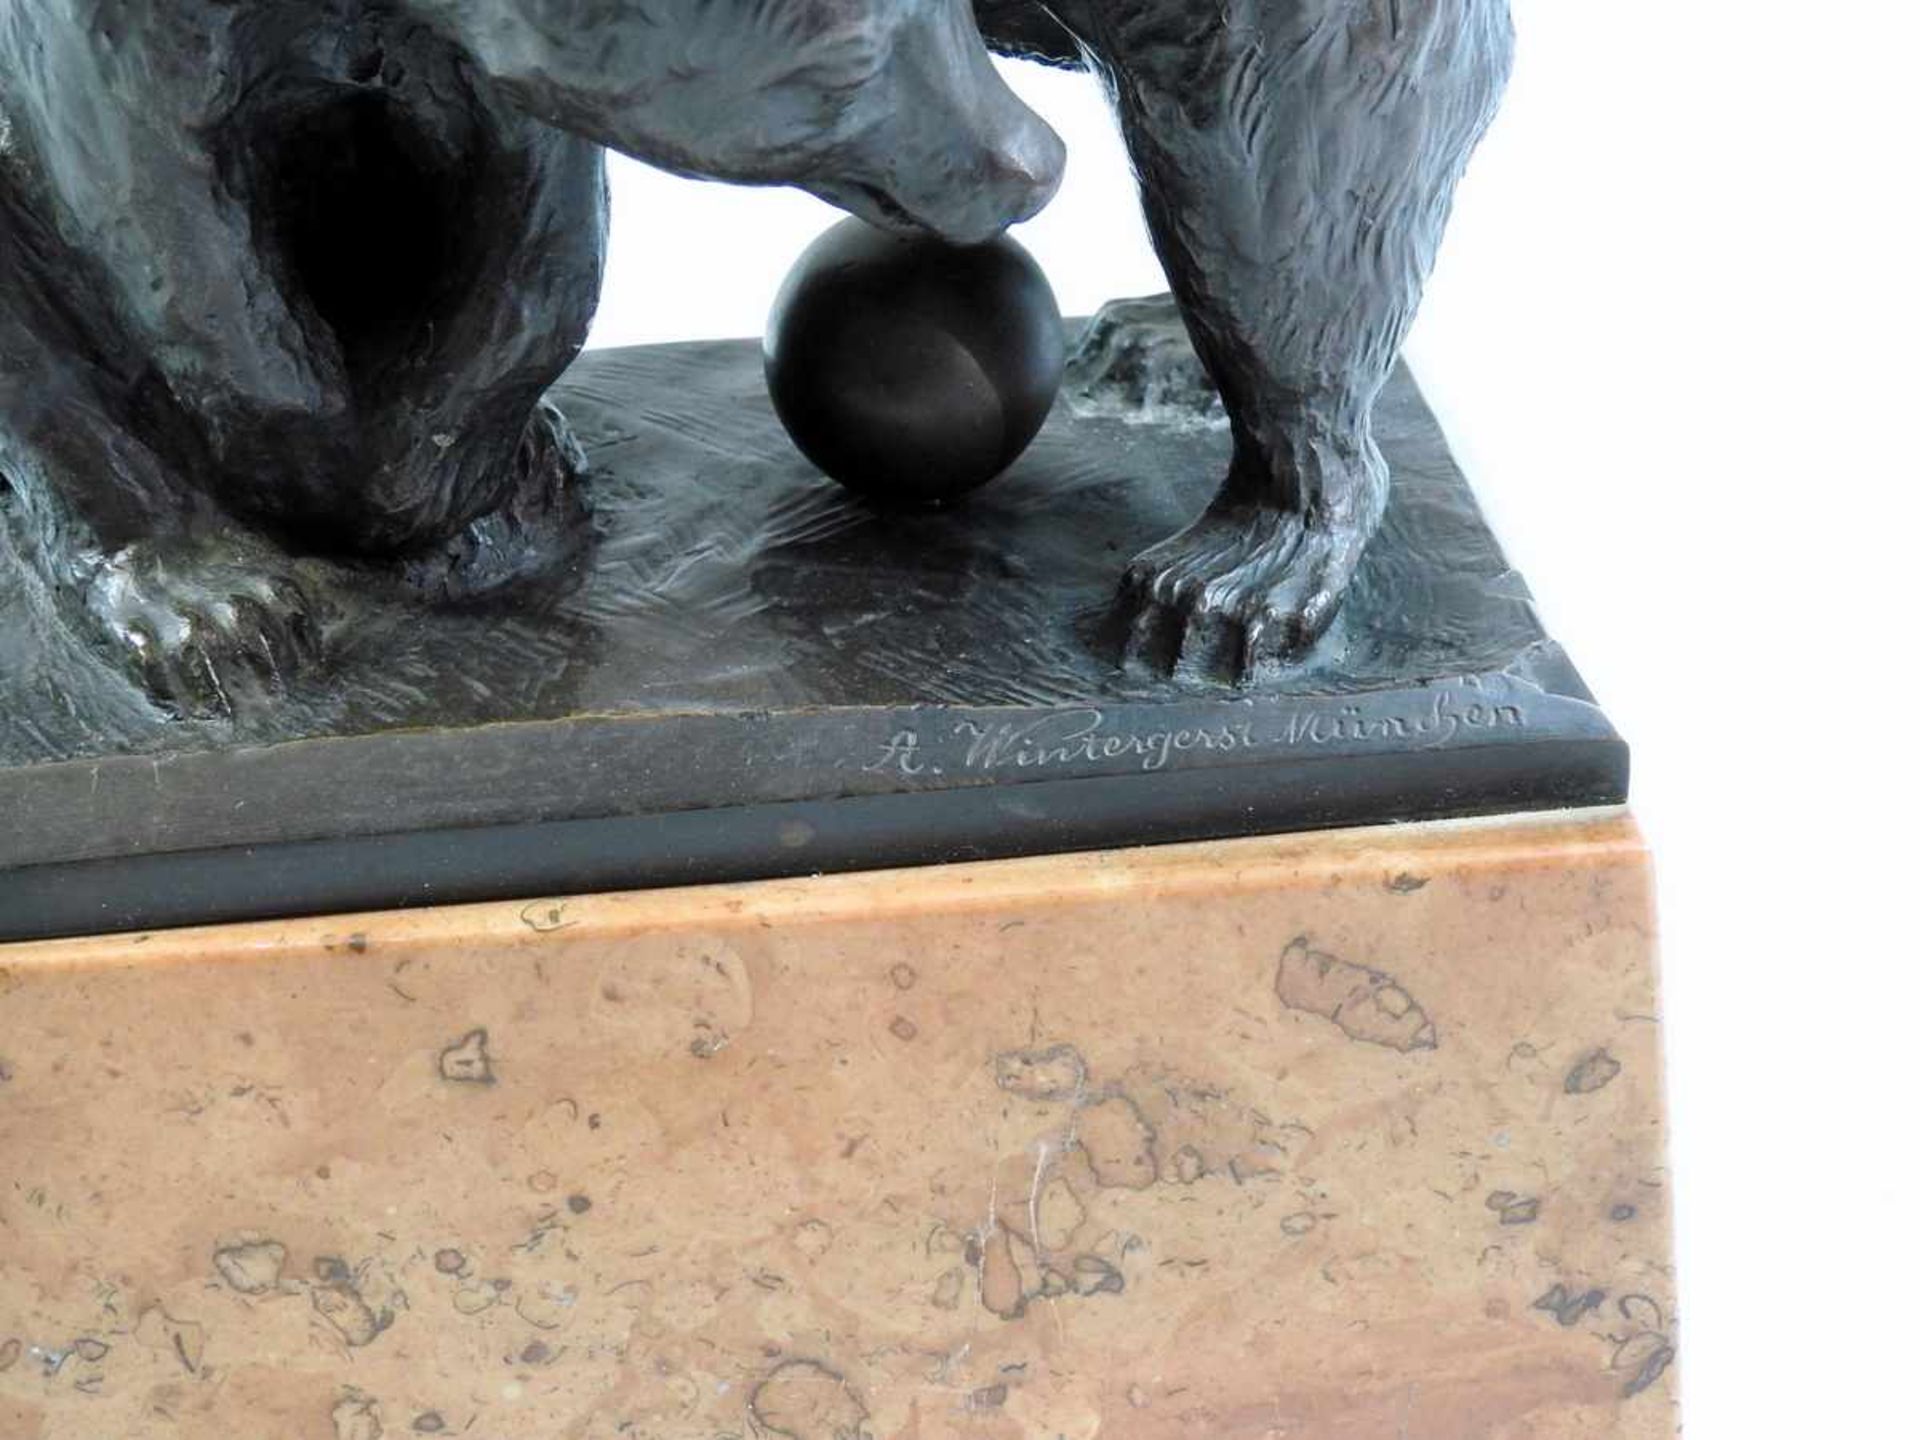 Paar Bären beim Ballspiel Bronze, auf Sockel, signiert "A. Wintergerst München". Feine Ausarbeitung. - Bild 3 aus 3